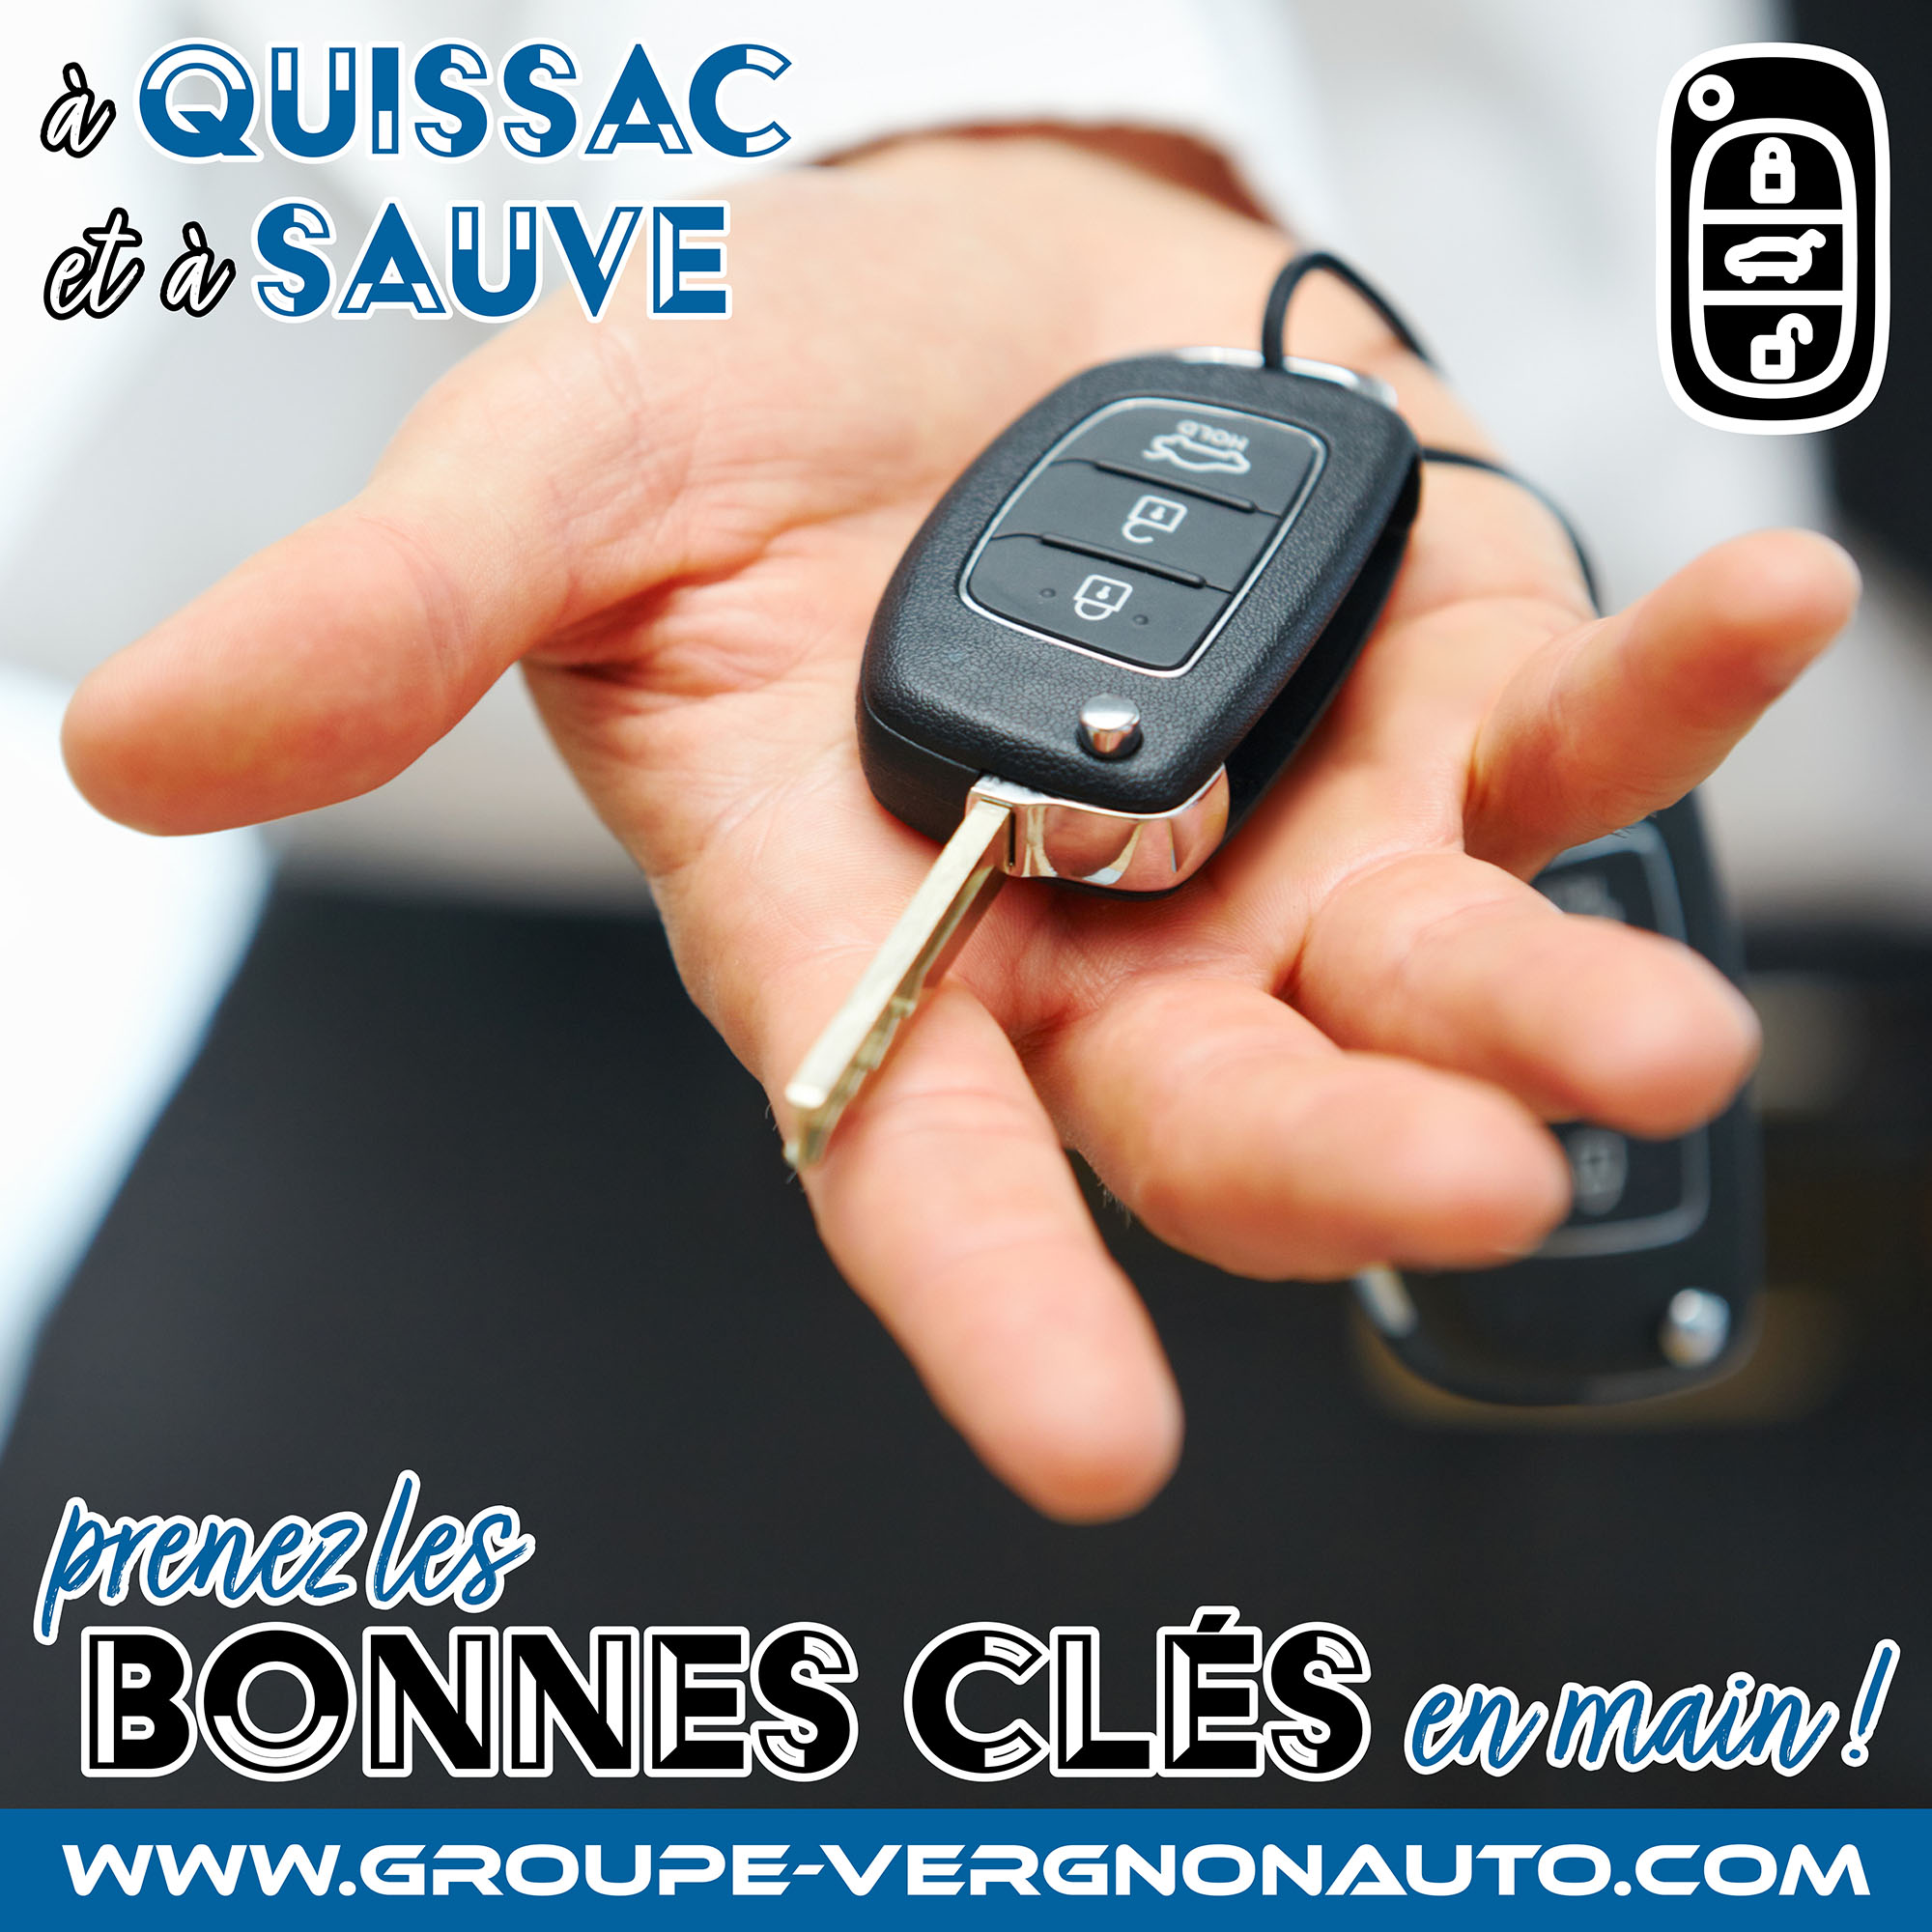 Peugeot, Citroën, Renault, Dacia et autres marques ! Sur nos parcs de Quissac et de Sauve, prenez les bonnes clés en main !